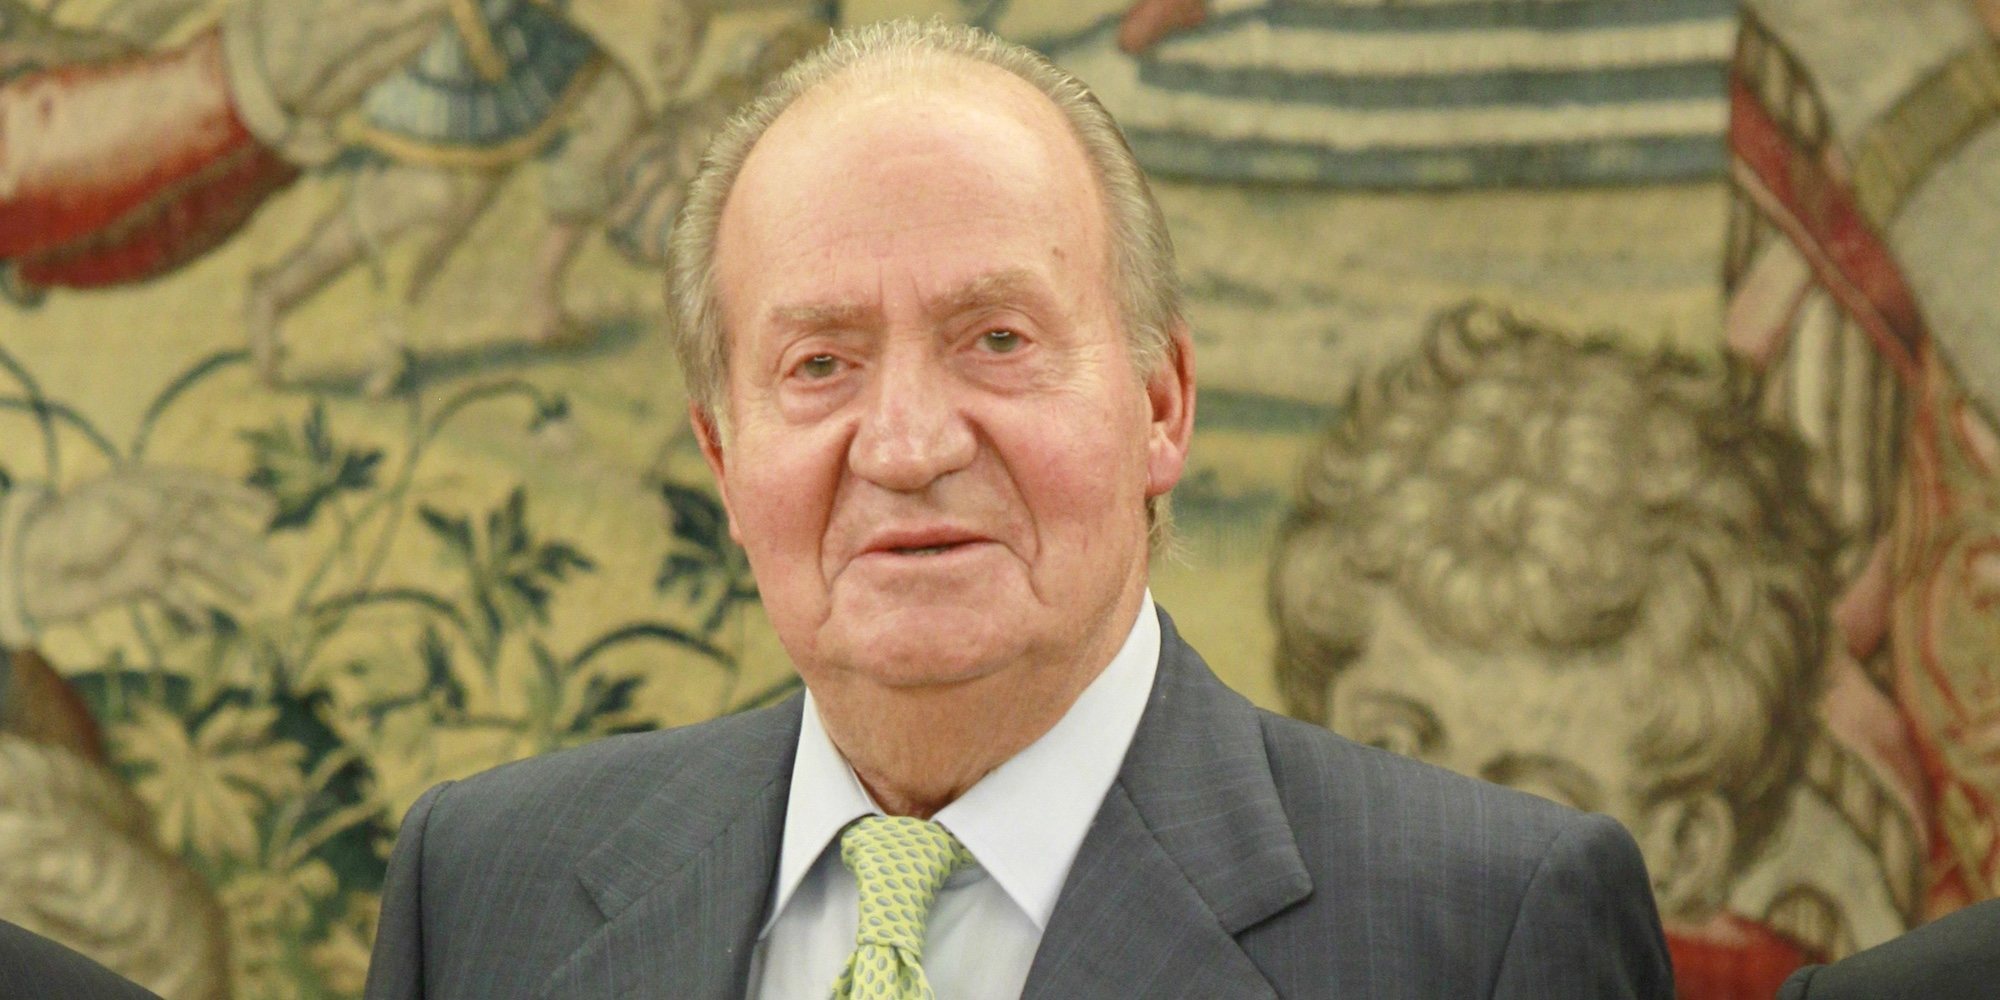 El Rey Juan Carlos I recibe el alta hospitalaria